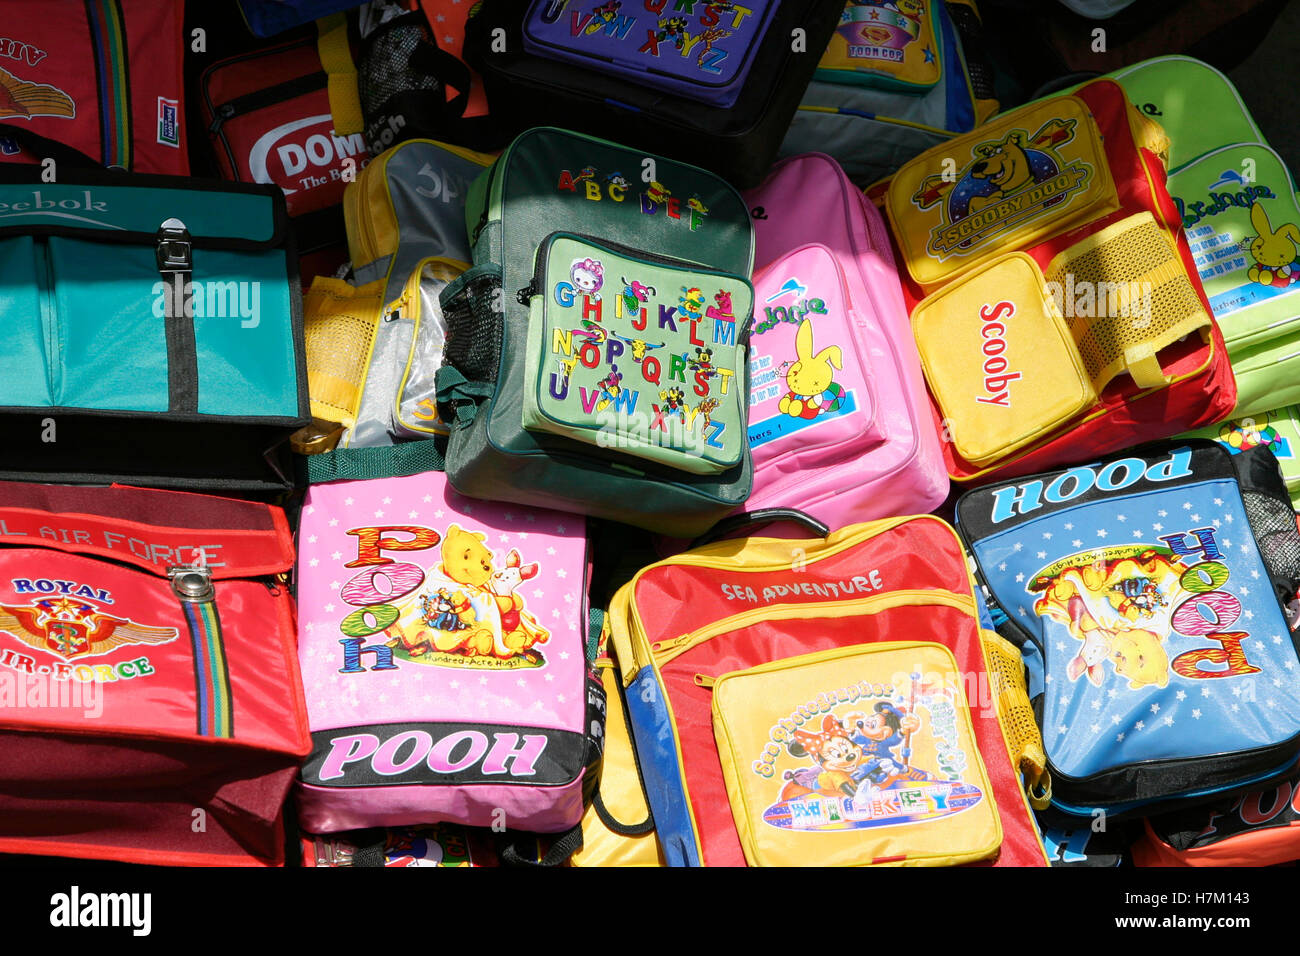 Schultaschen für Kinder, die in einer Garderobe der Grundschule an den Haken  hängen Stockfotografie - Alamy